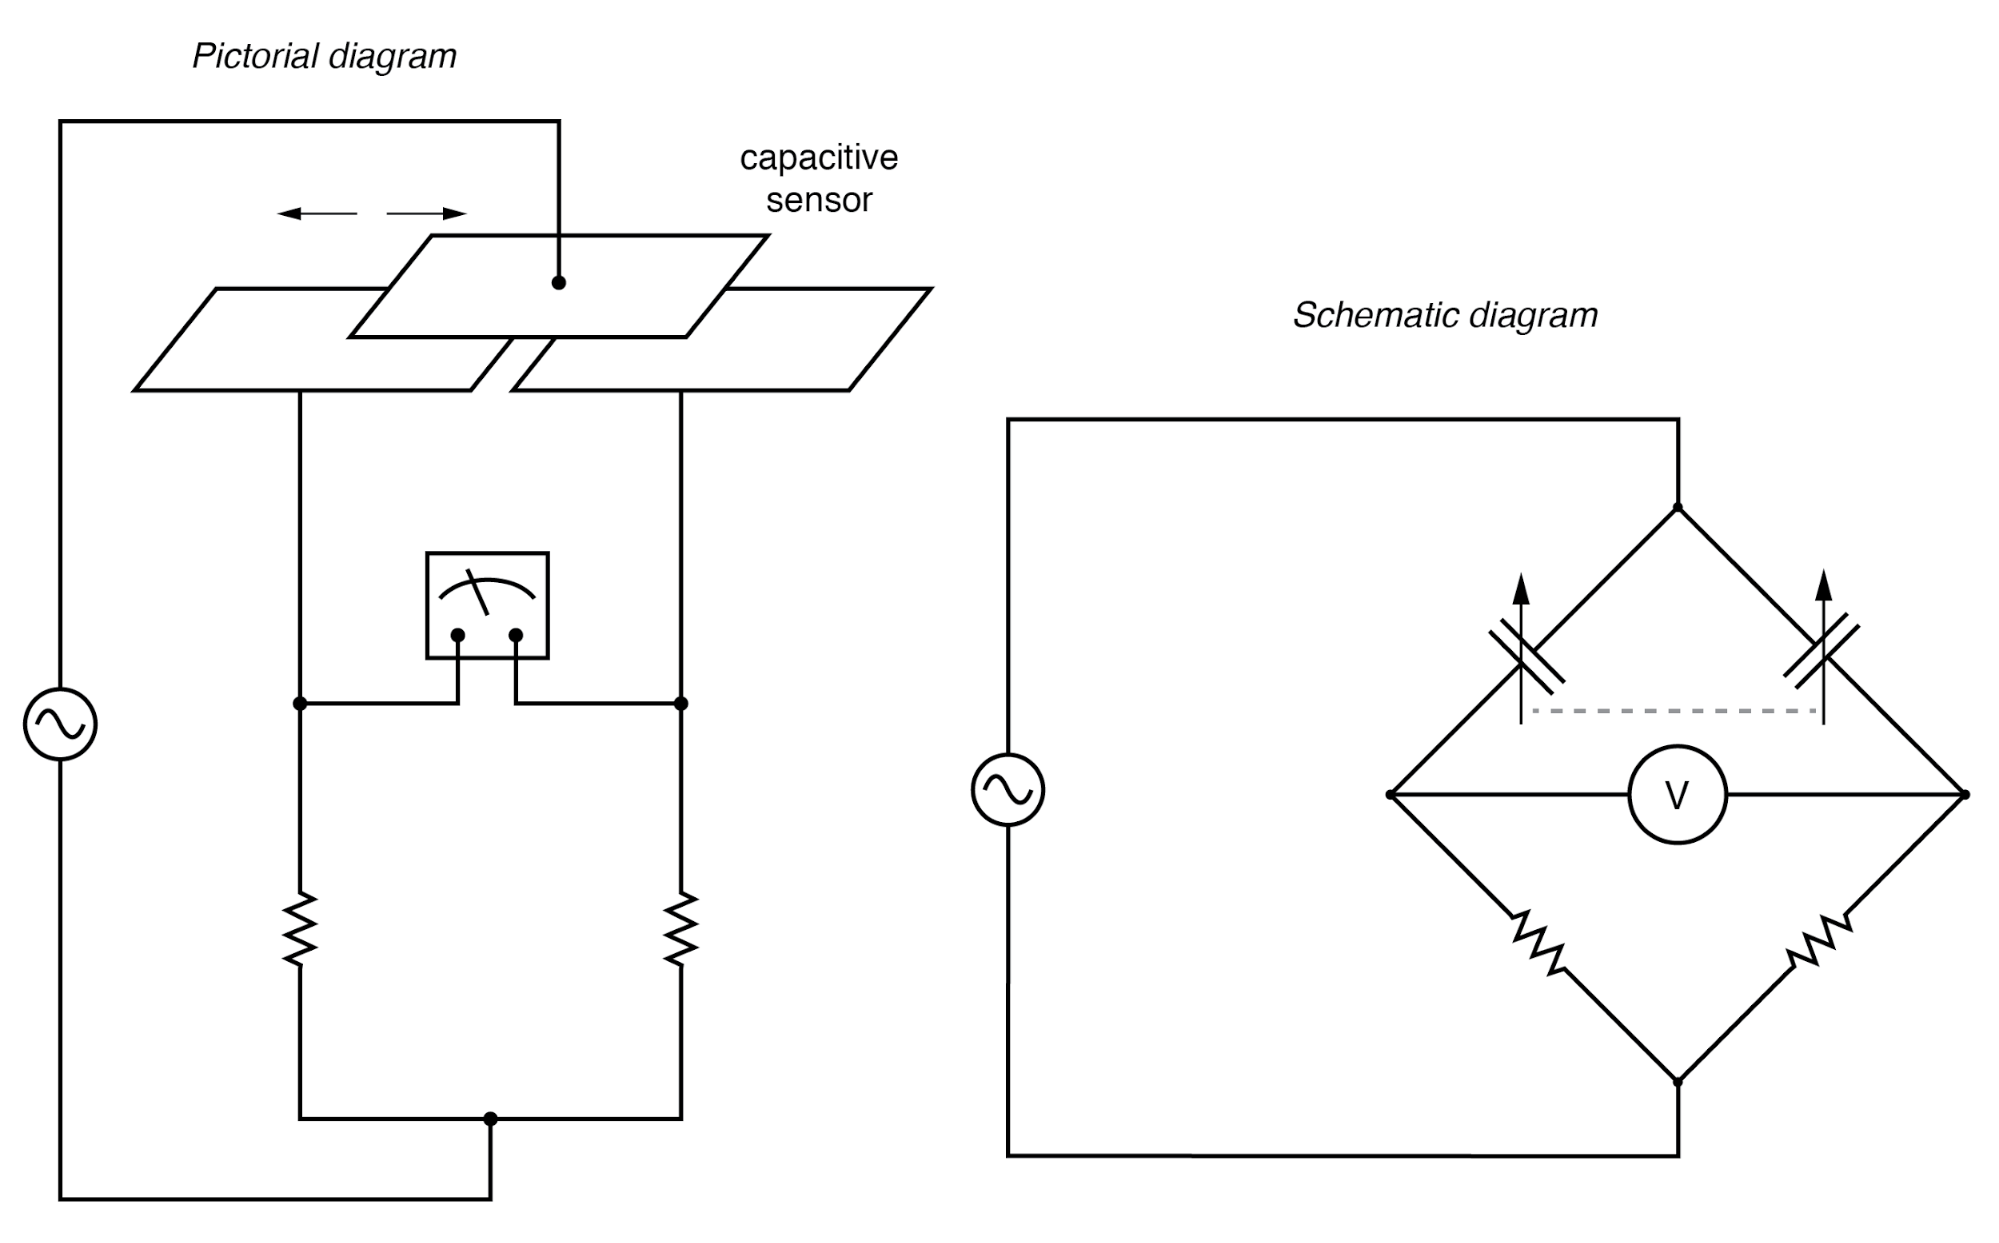 Differential capacitive transducer bridge measurement circuit.